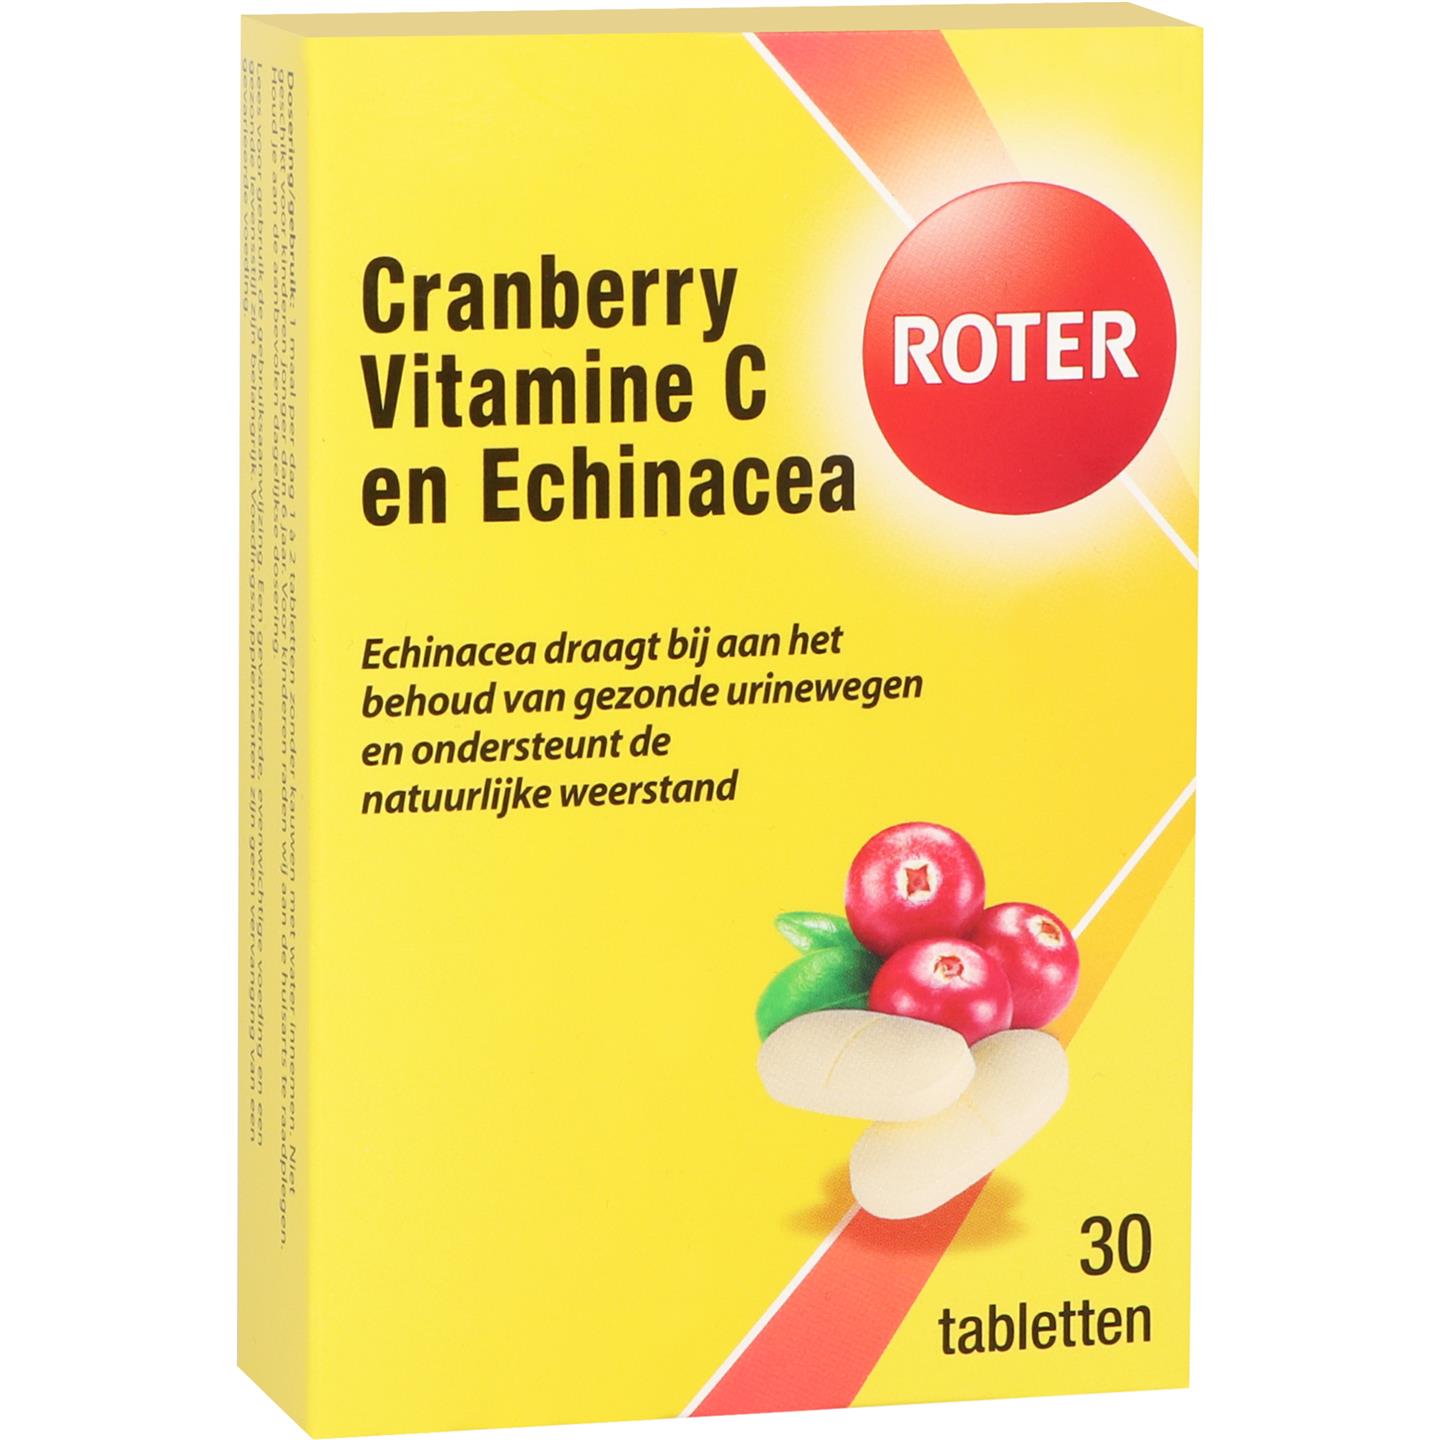 Cranberry Vitamine C en Echinacea